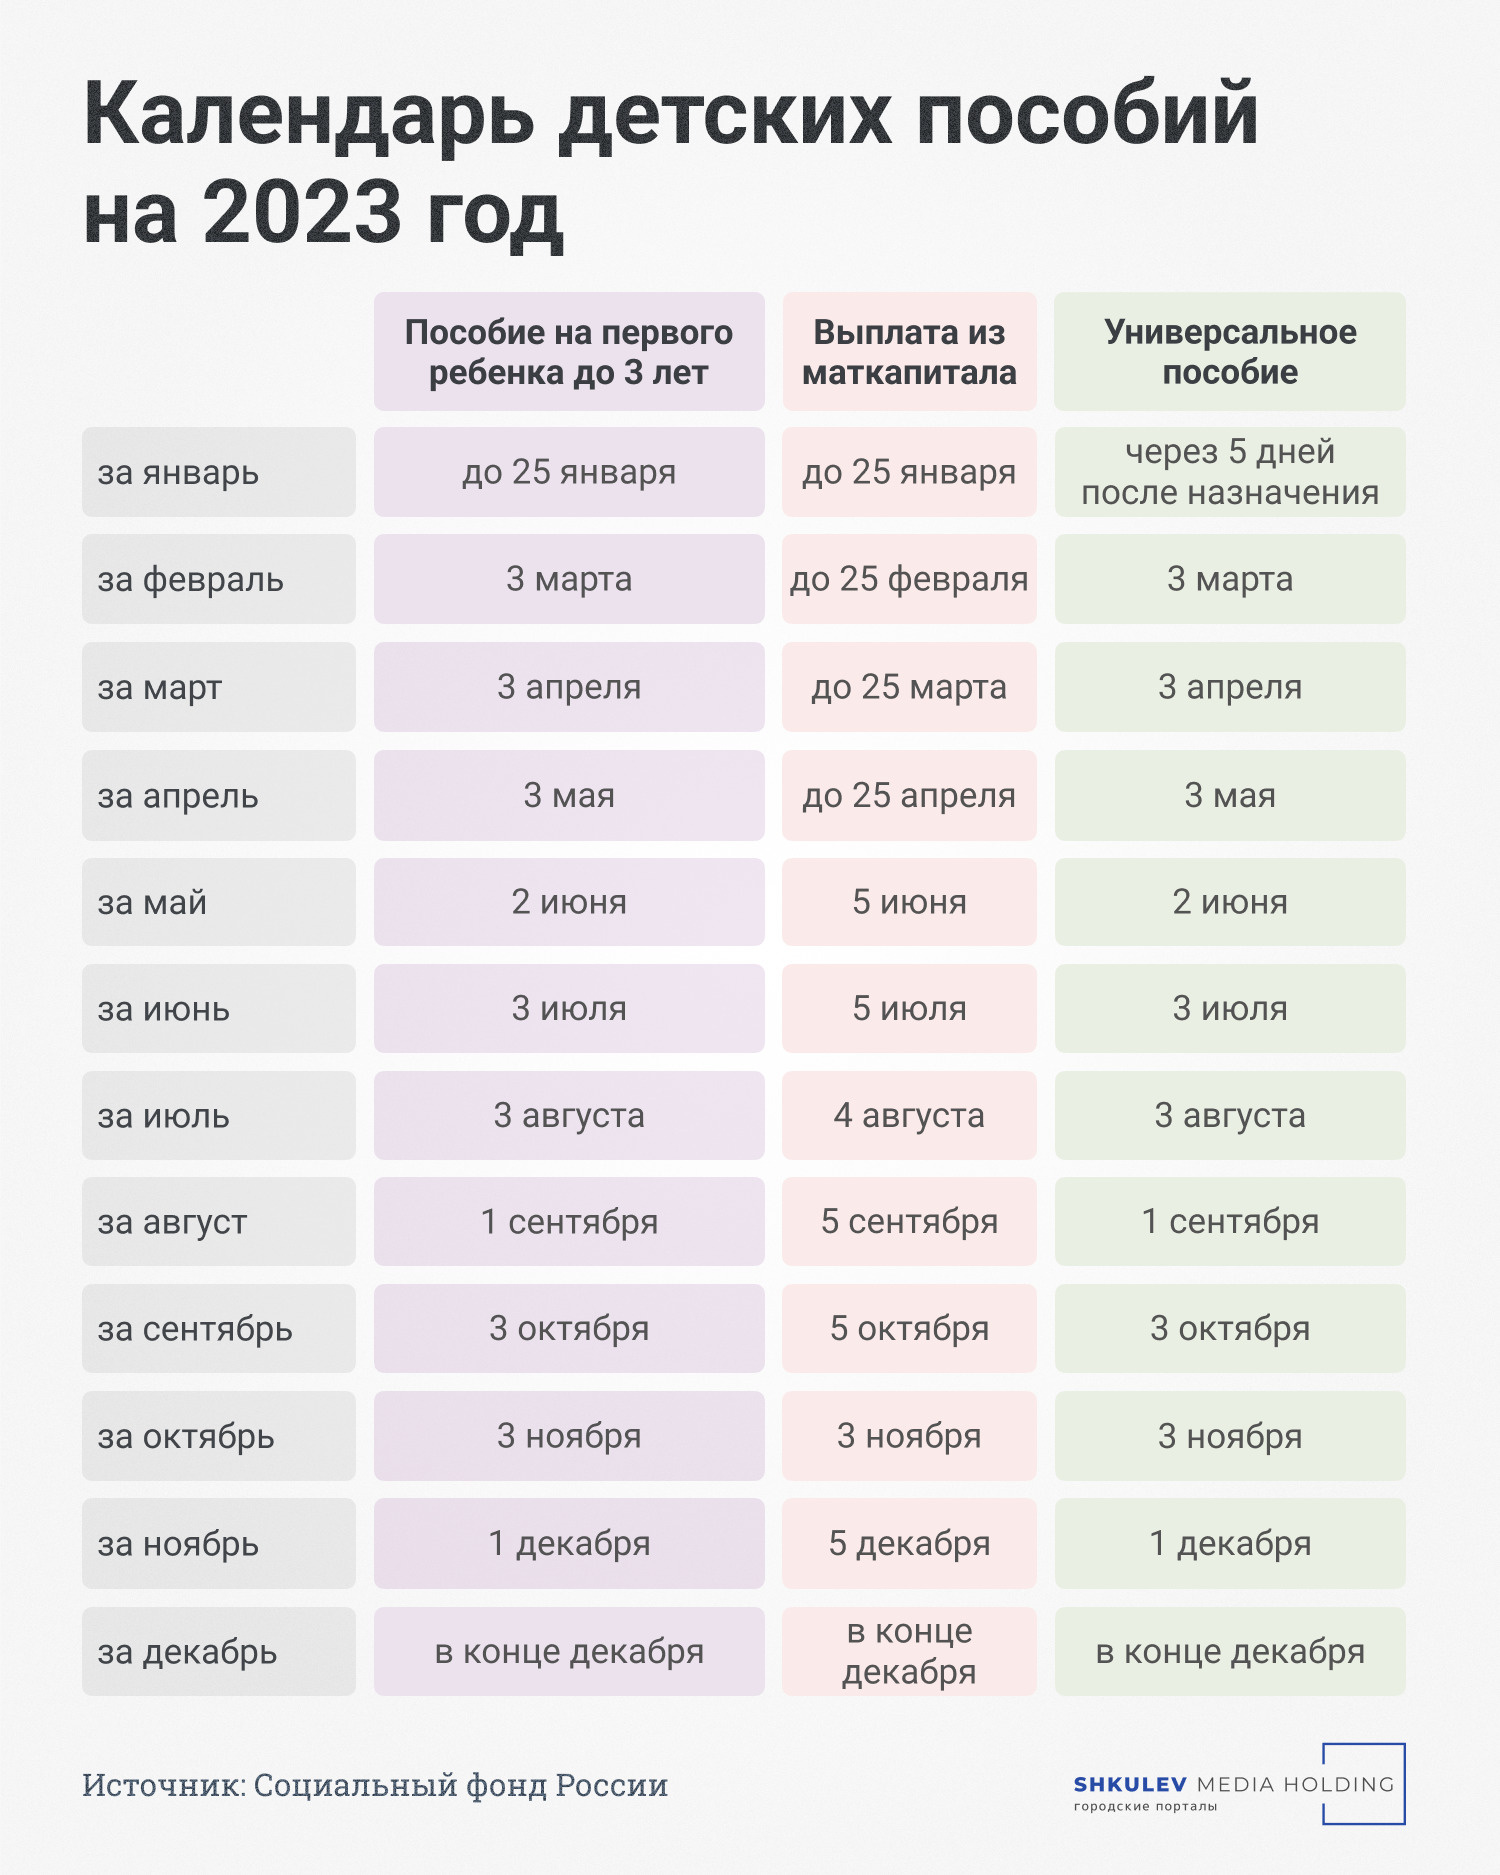 Когда придет путинское пособие и выплата из маткапитала: расписание детских  пособий до конца года - 31 мая 2023 - v1.ru